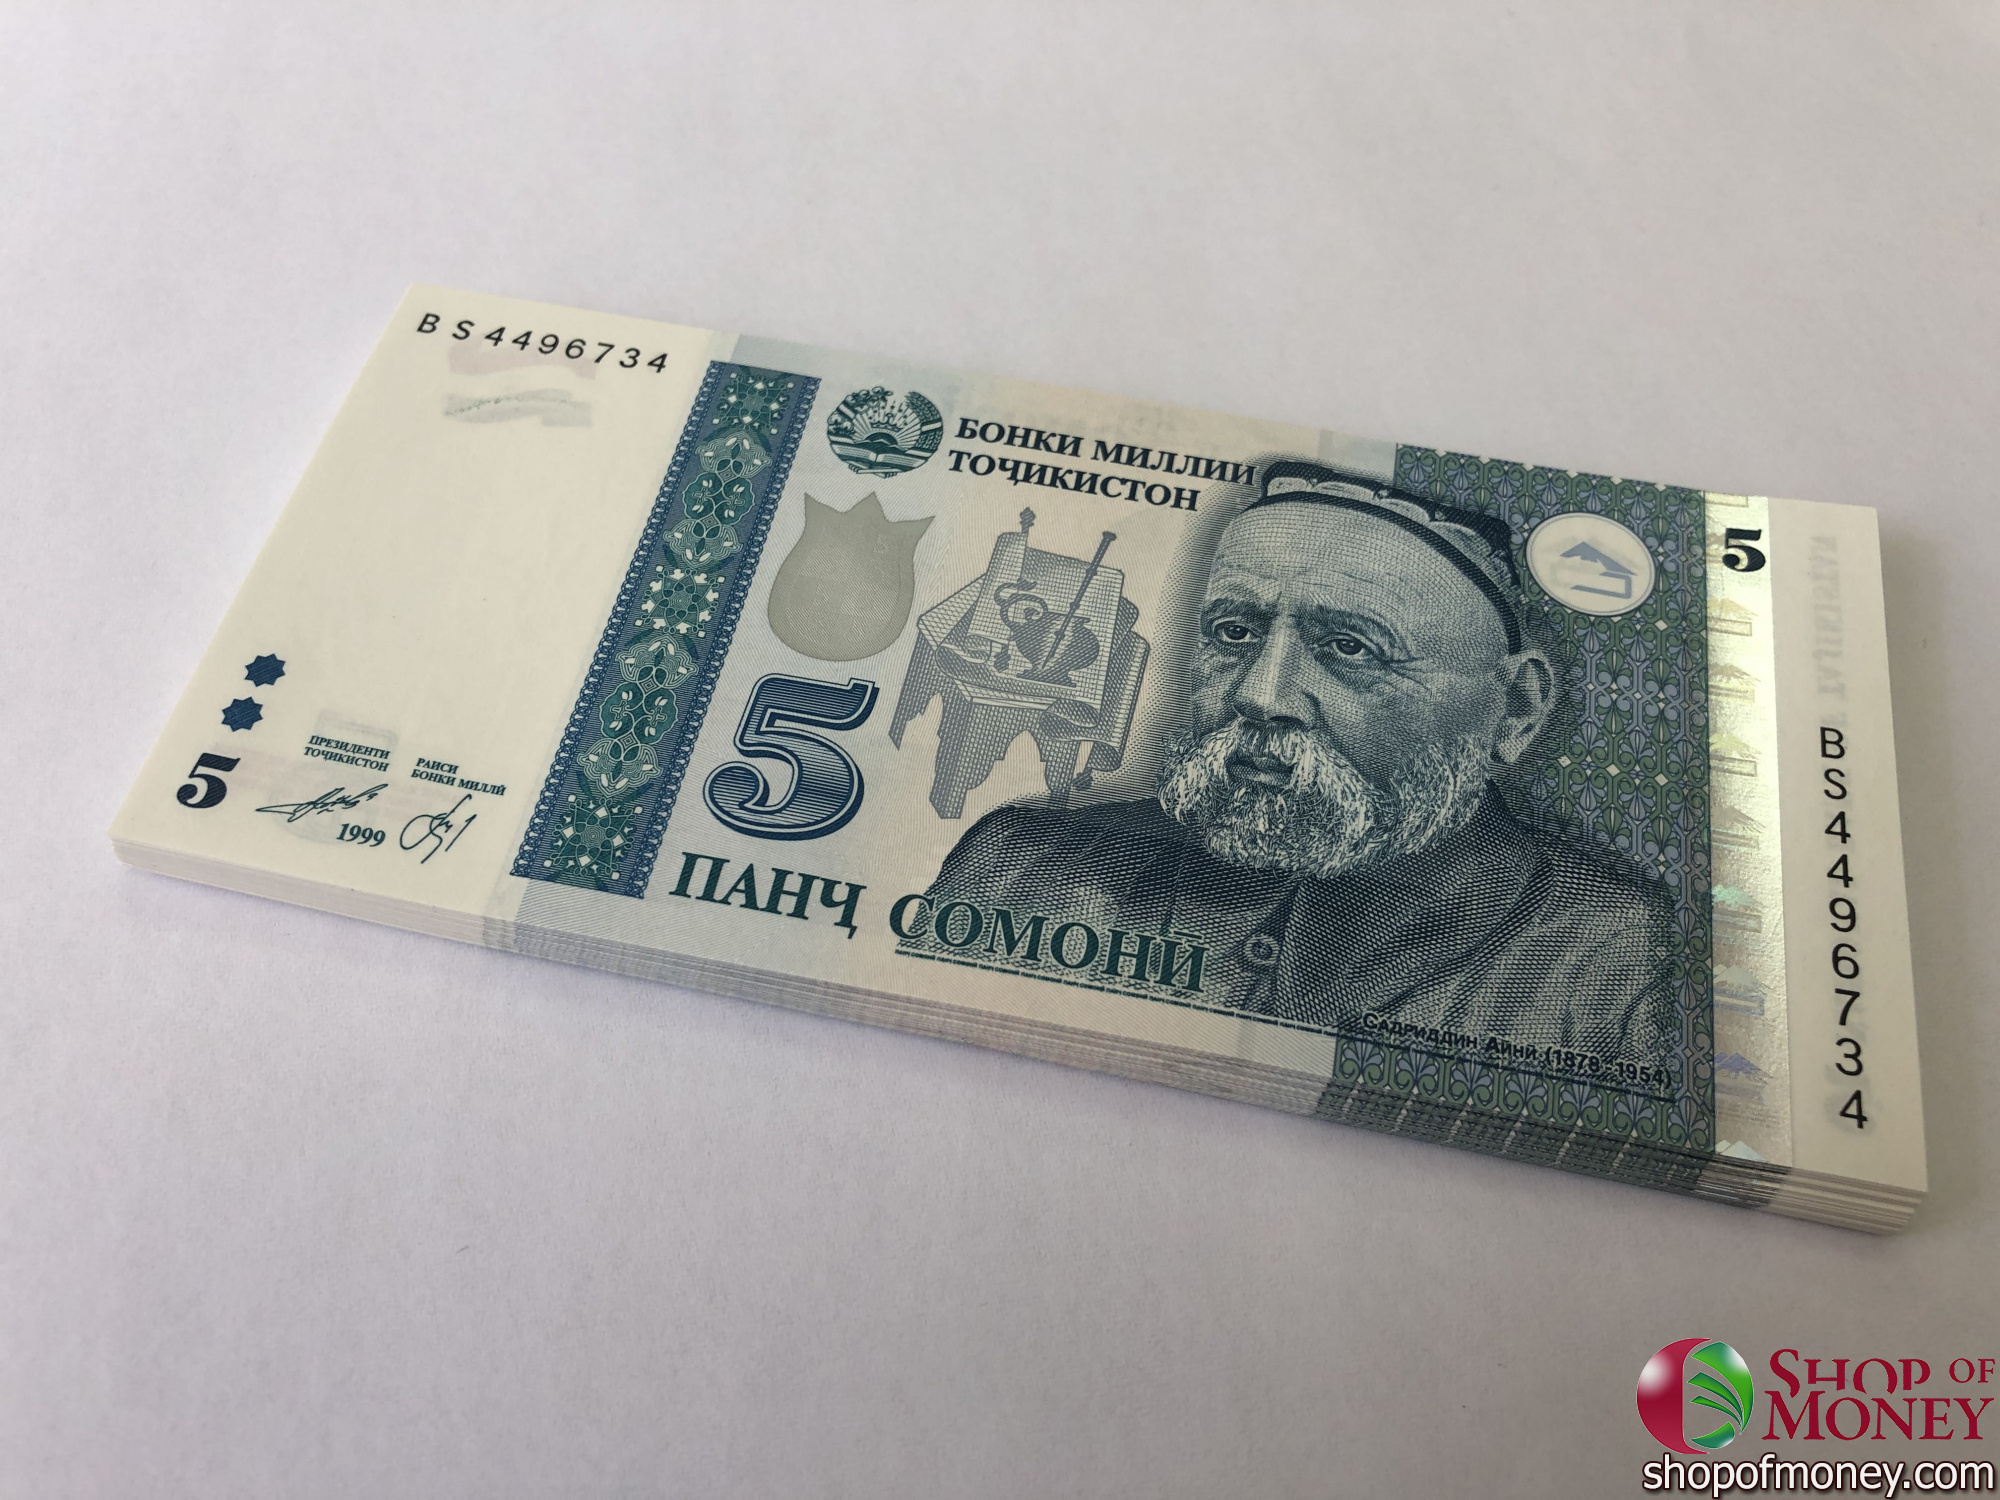 60 сомони в рублях. Купюры Таджикистана. Купюра Сомони. Банкнота 50 Сомони. Таджикский Сомони.